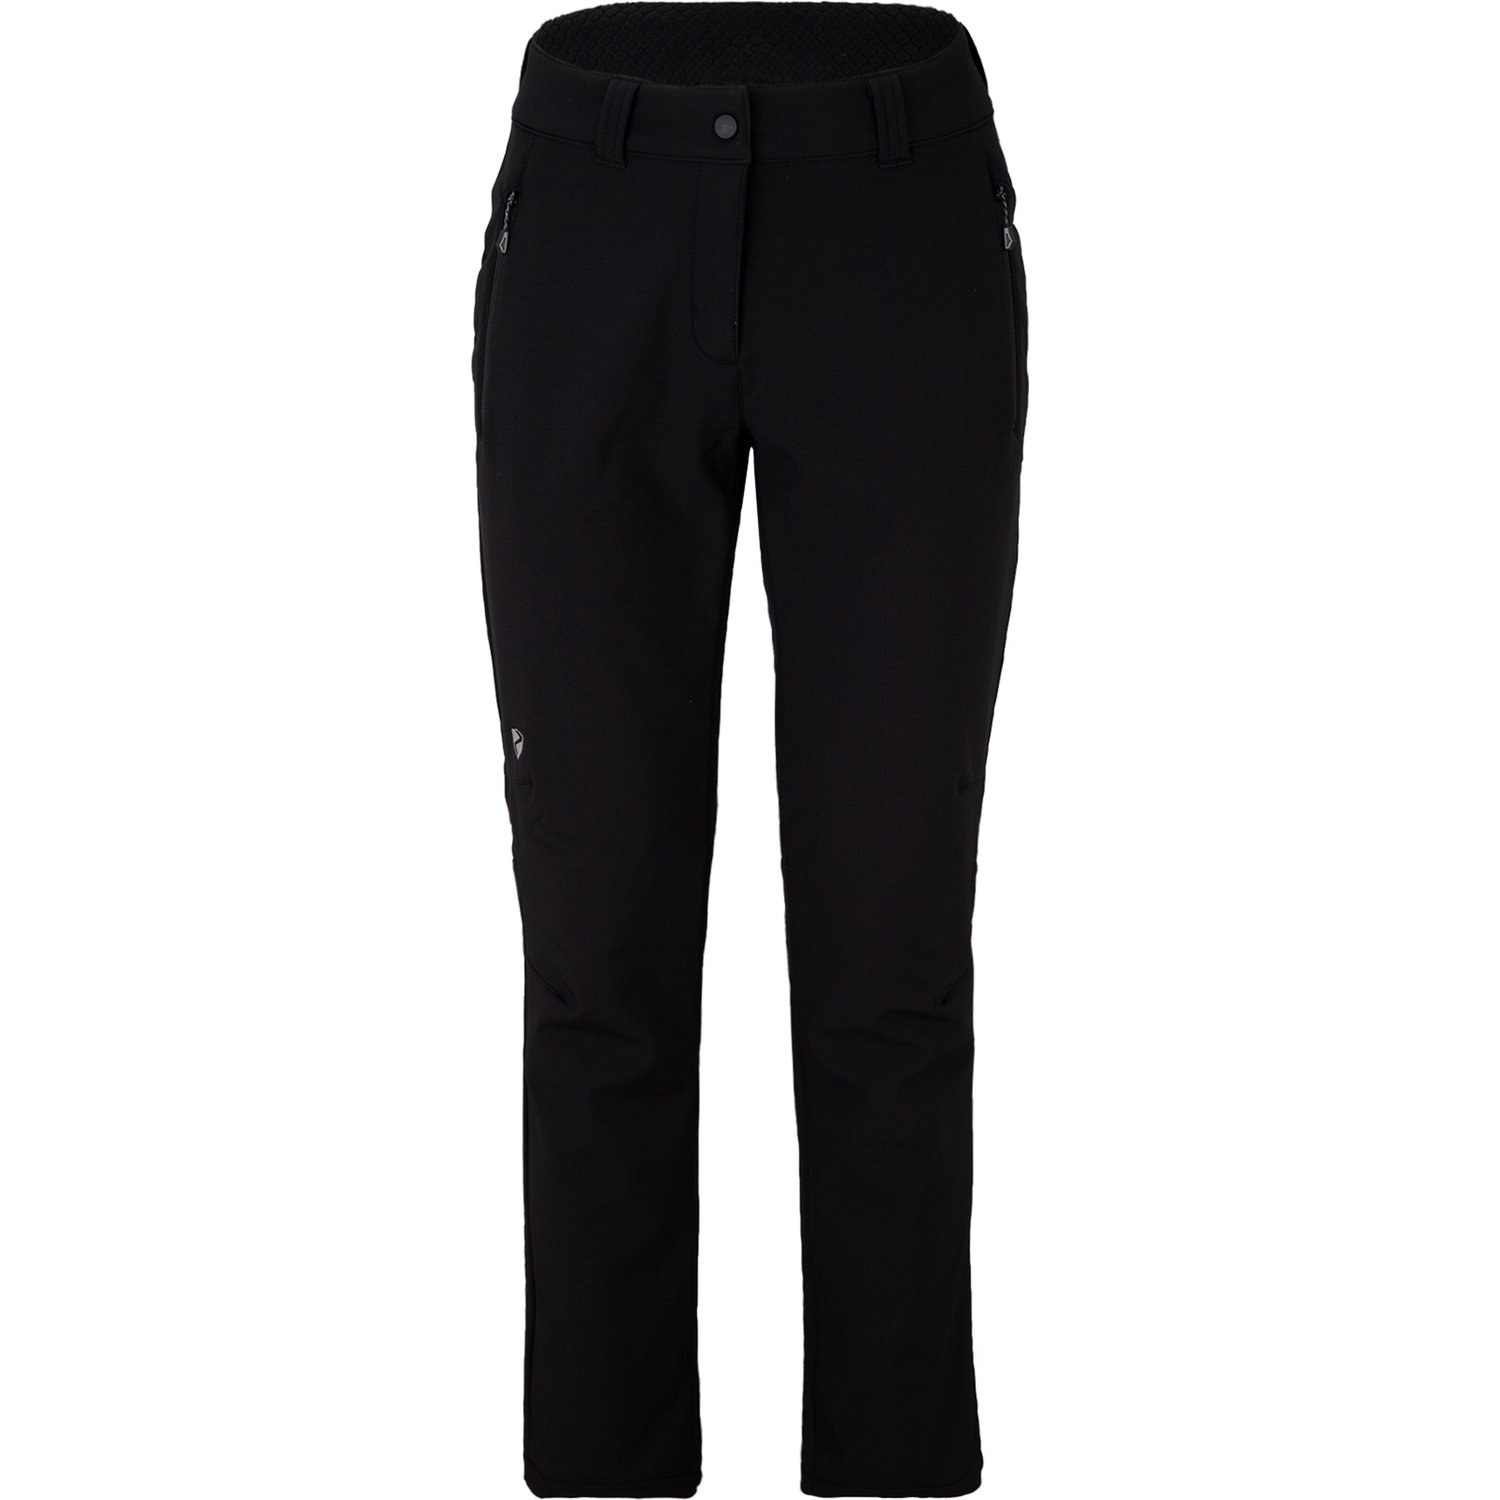 lady - Sport black - active), TALPA Klamser 44, Hosen (pants